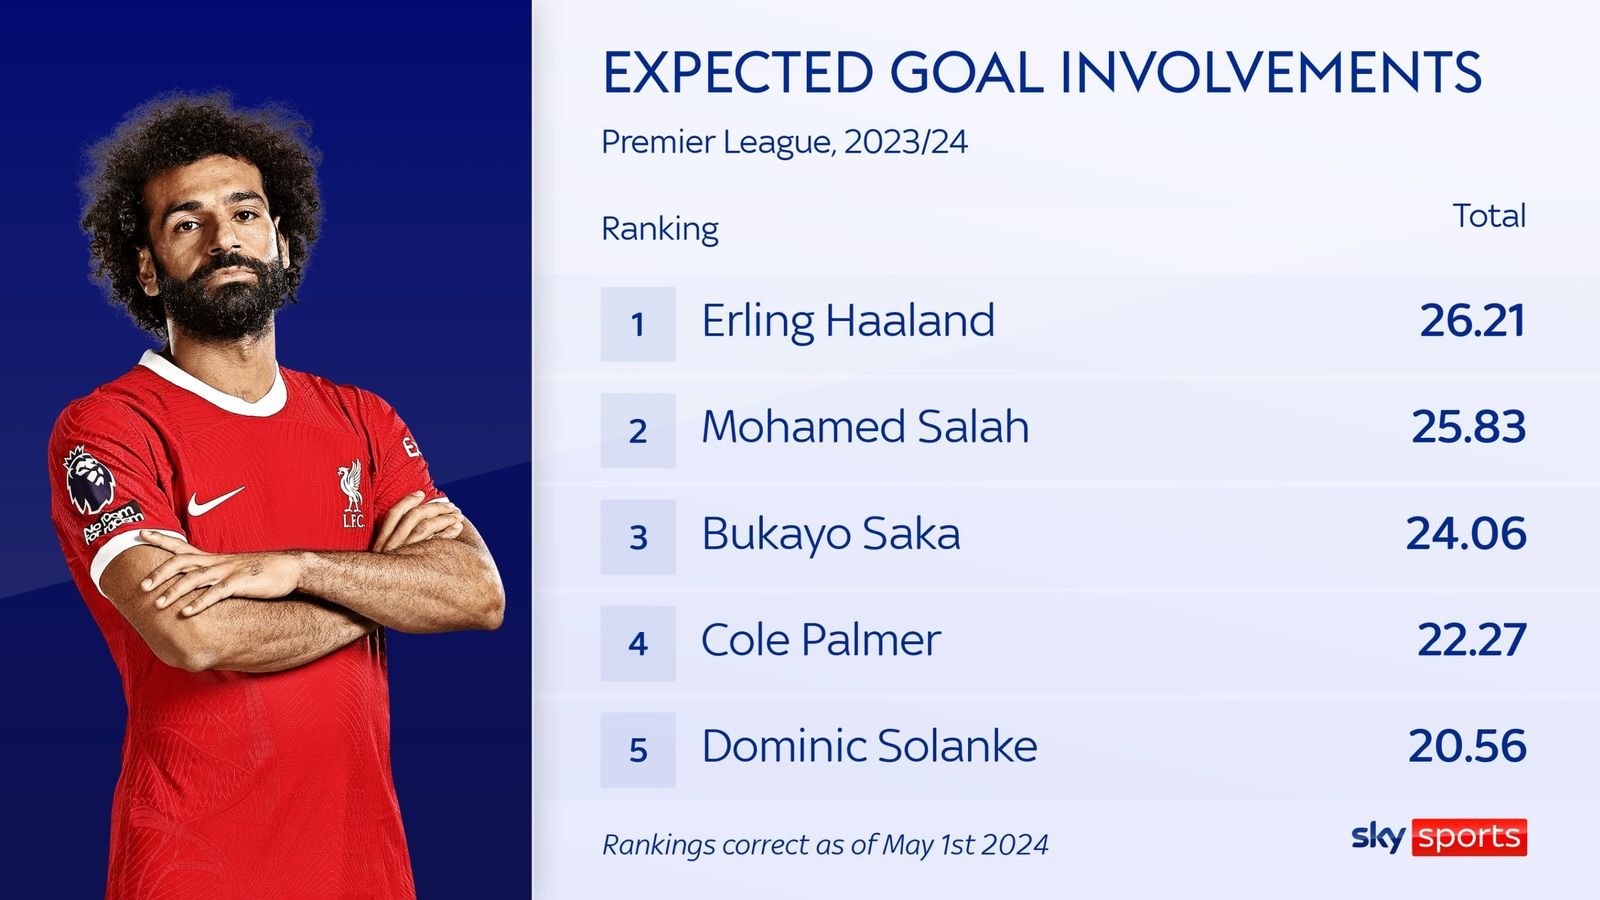 محمد صلاح يحتل المركز الثاني في قائمة الأهداف المتوقعة في الدوري الإنجليزي الممتاز بعد إرلينغ هالاند